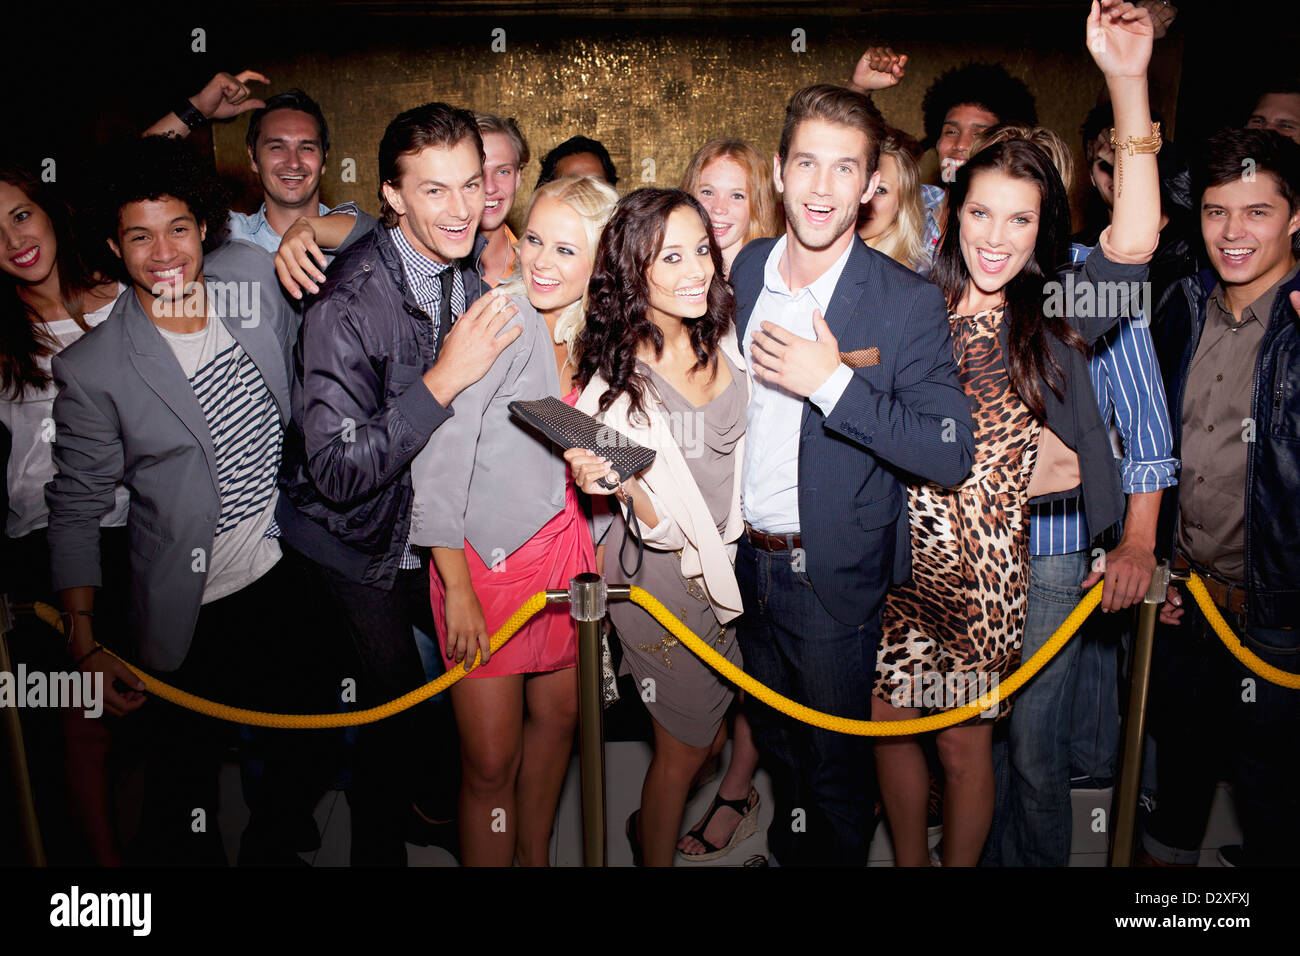 Porträt der begeisterten Menge in Warteschlange vor Nachtclub Stockfoto